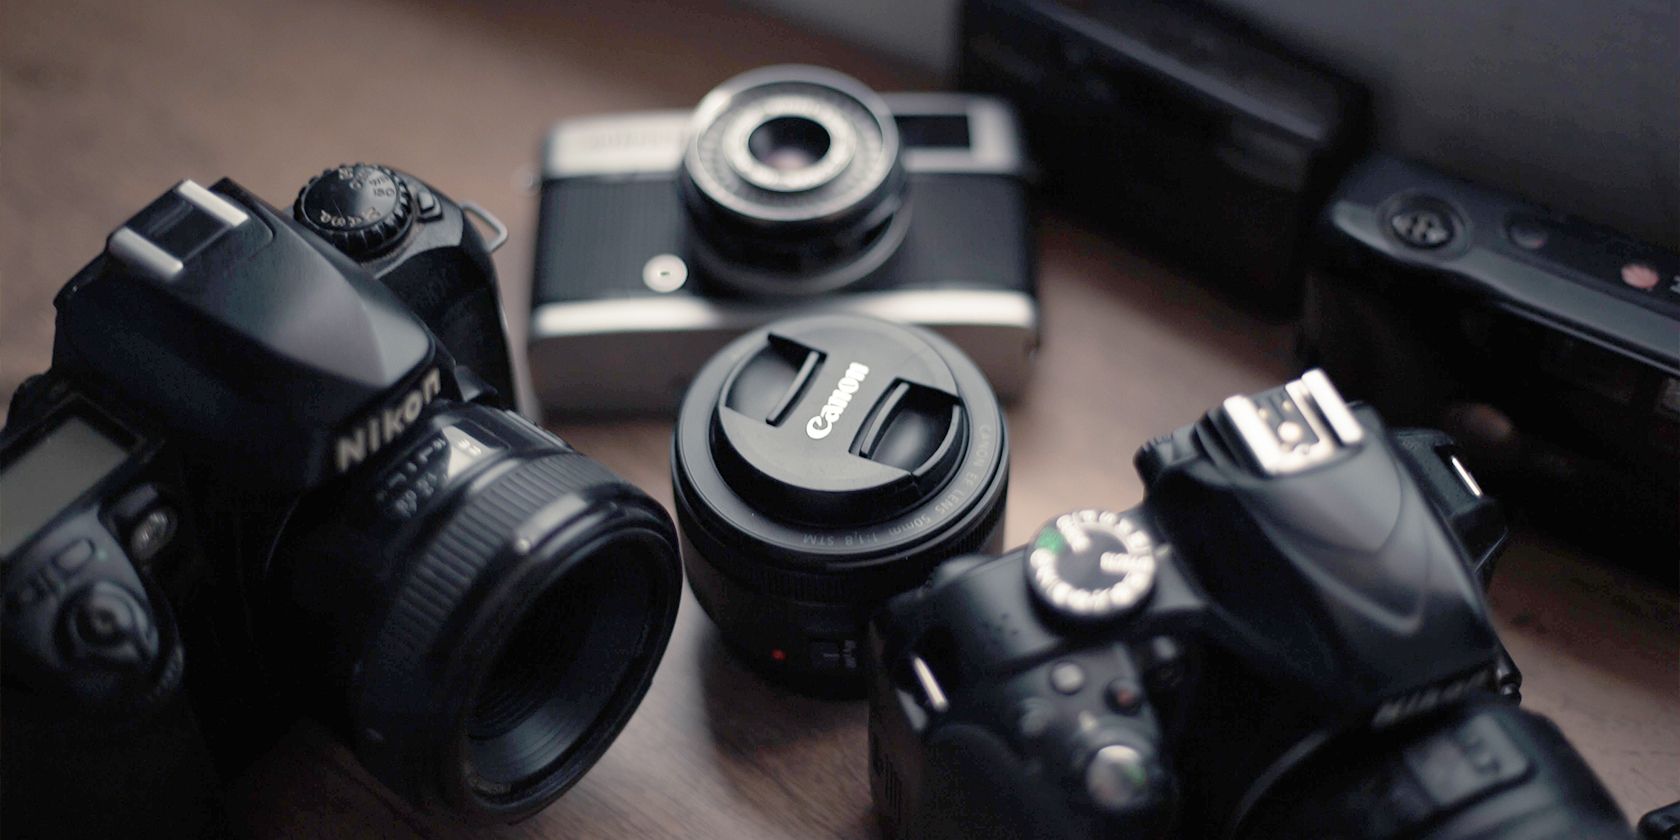 A Canon lens between two Nikon Cameras